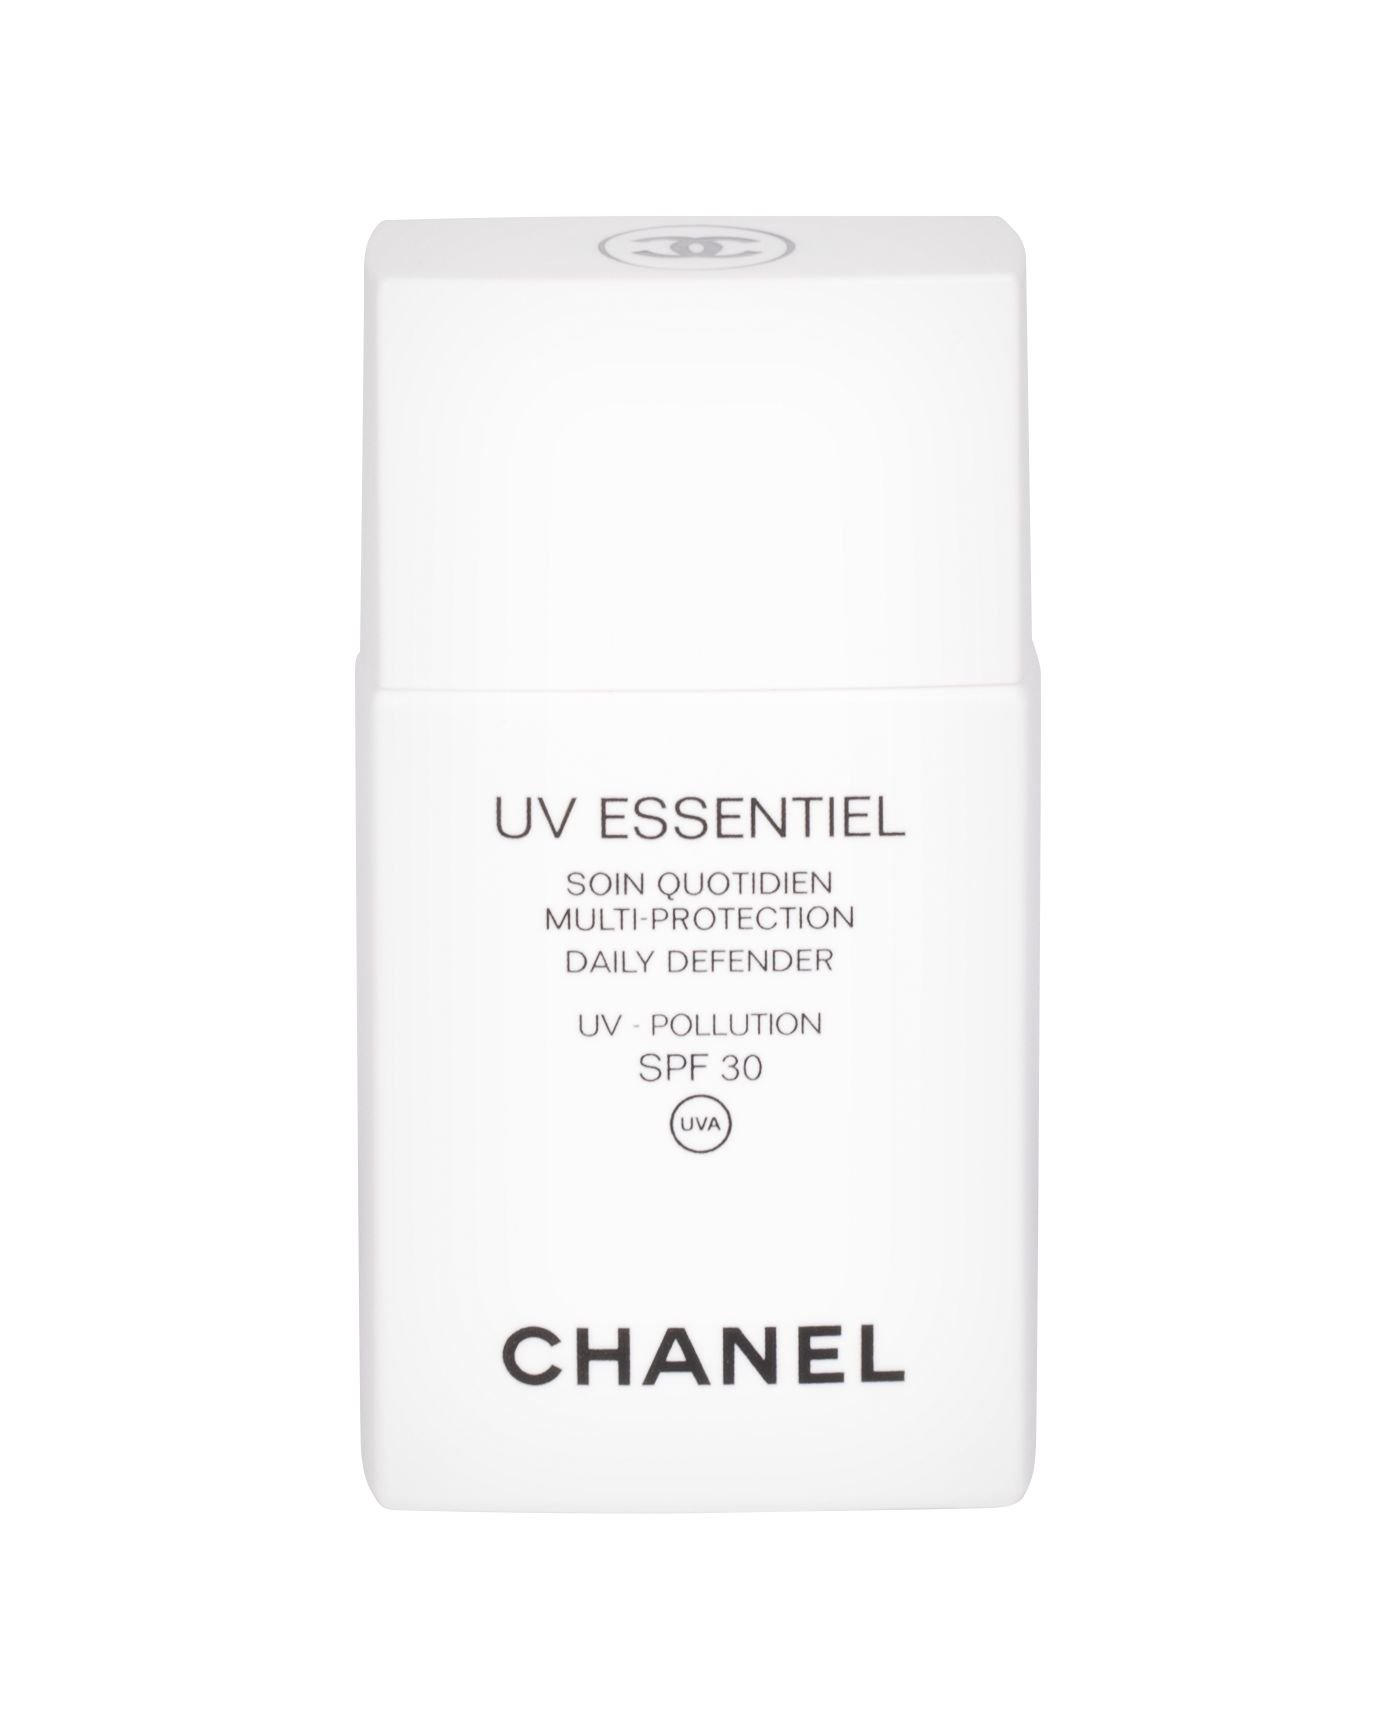 Chanel UV Essentiel Daily UV Care Multi-Protection SPF30